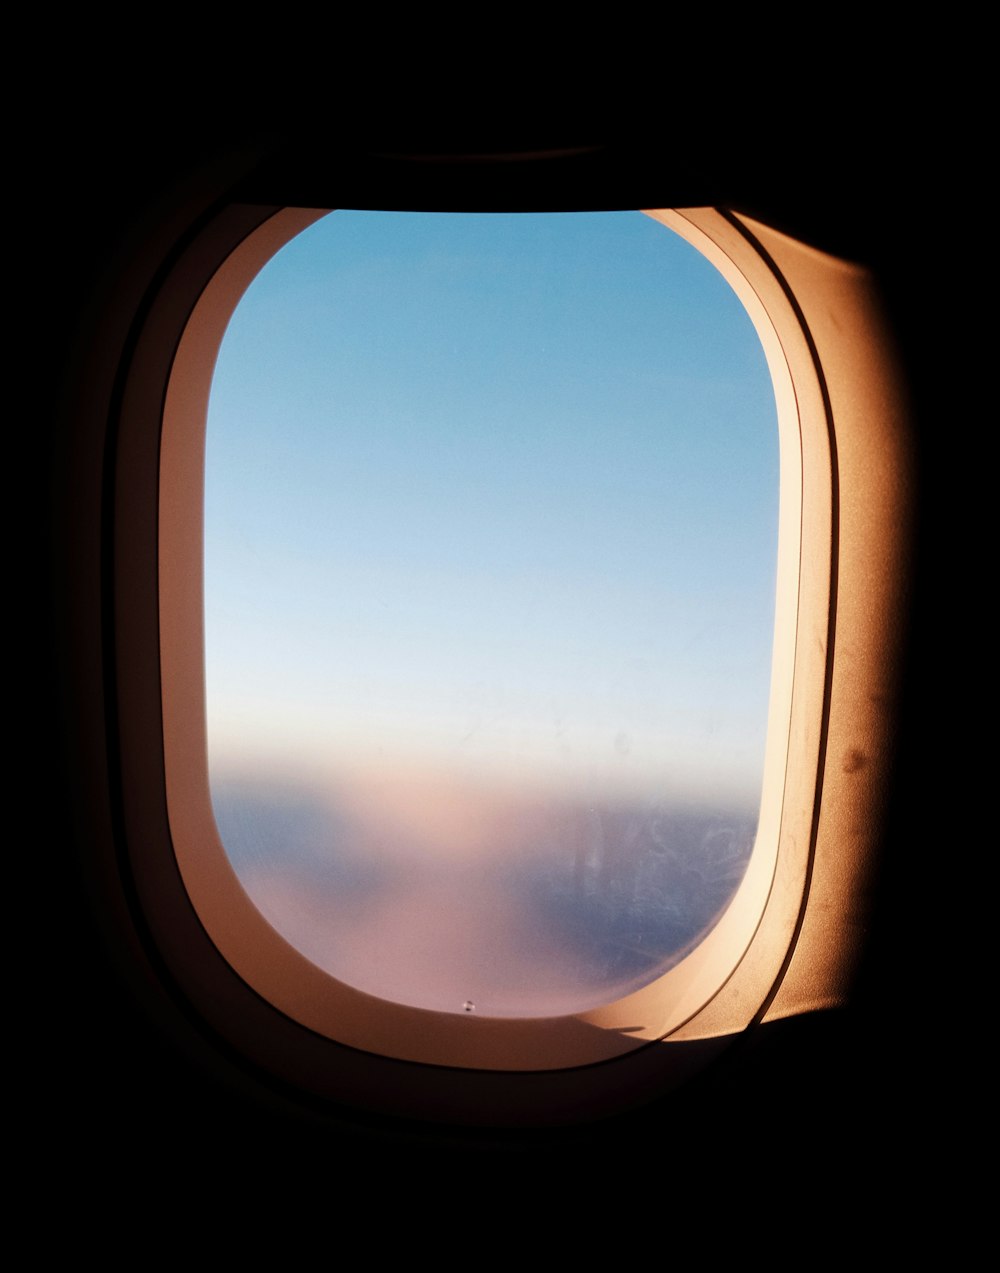 ventana de avion